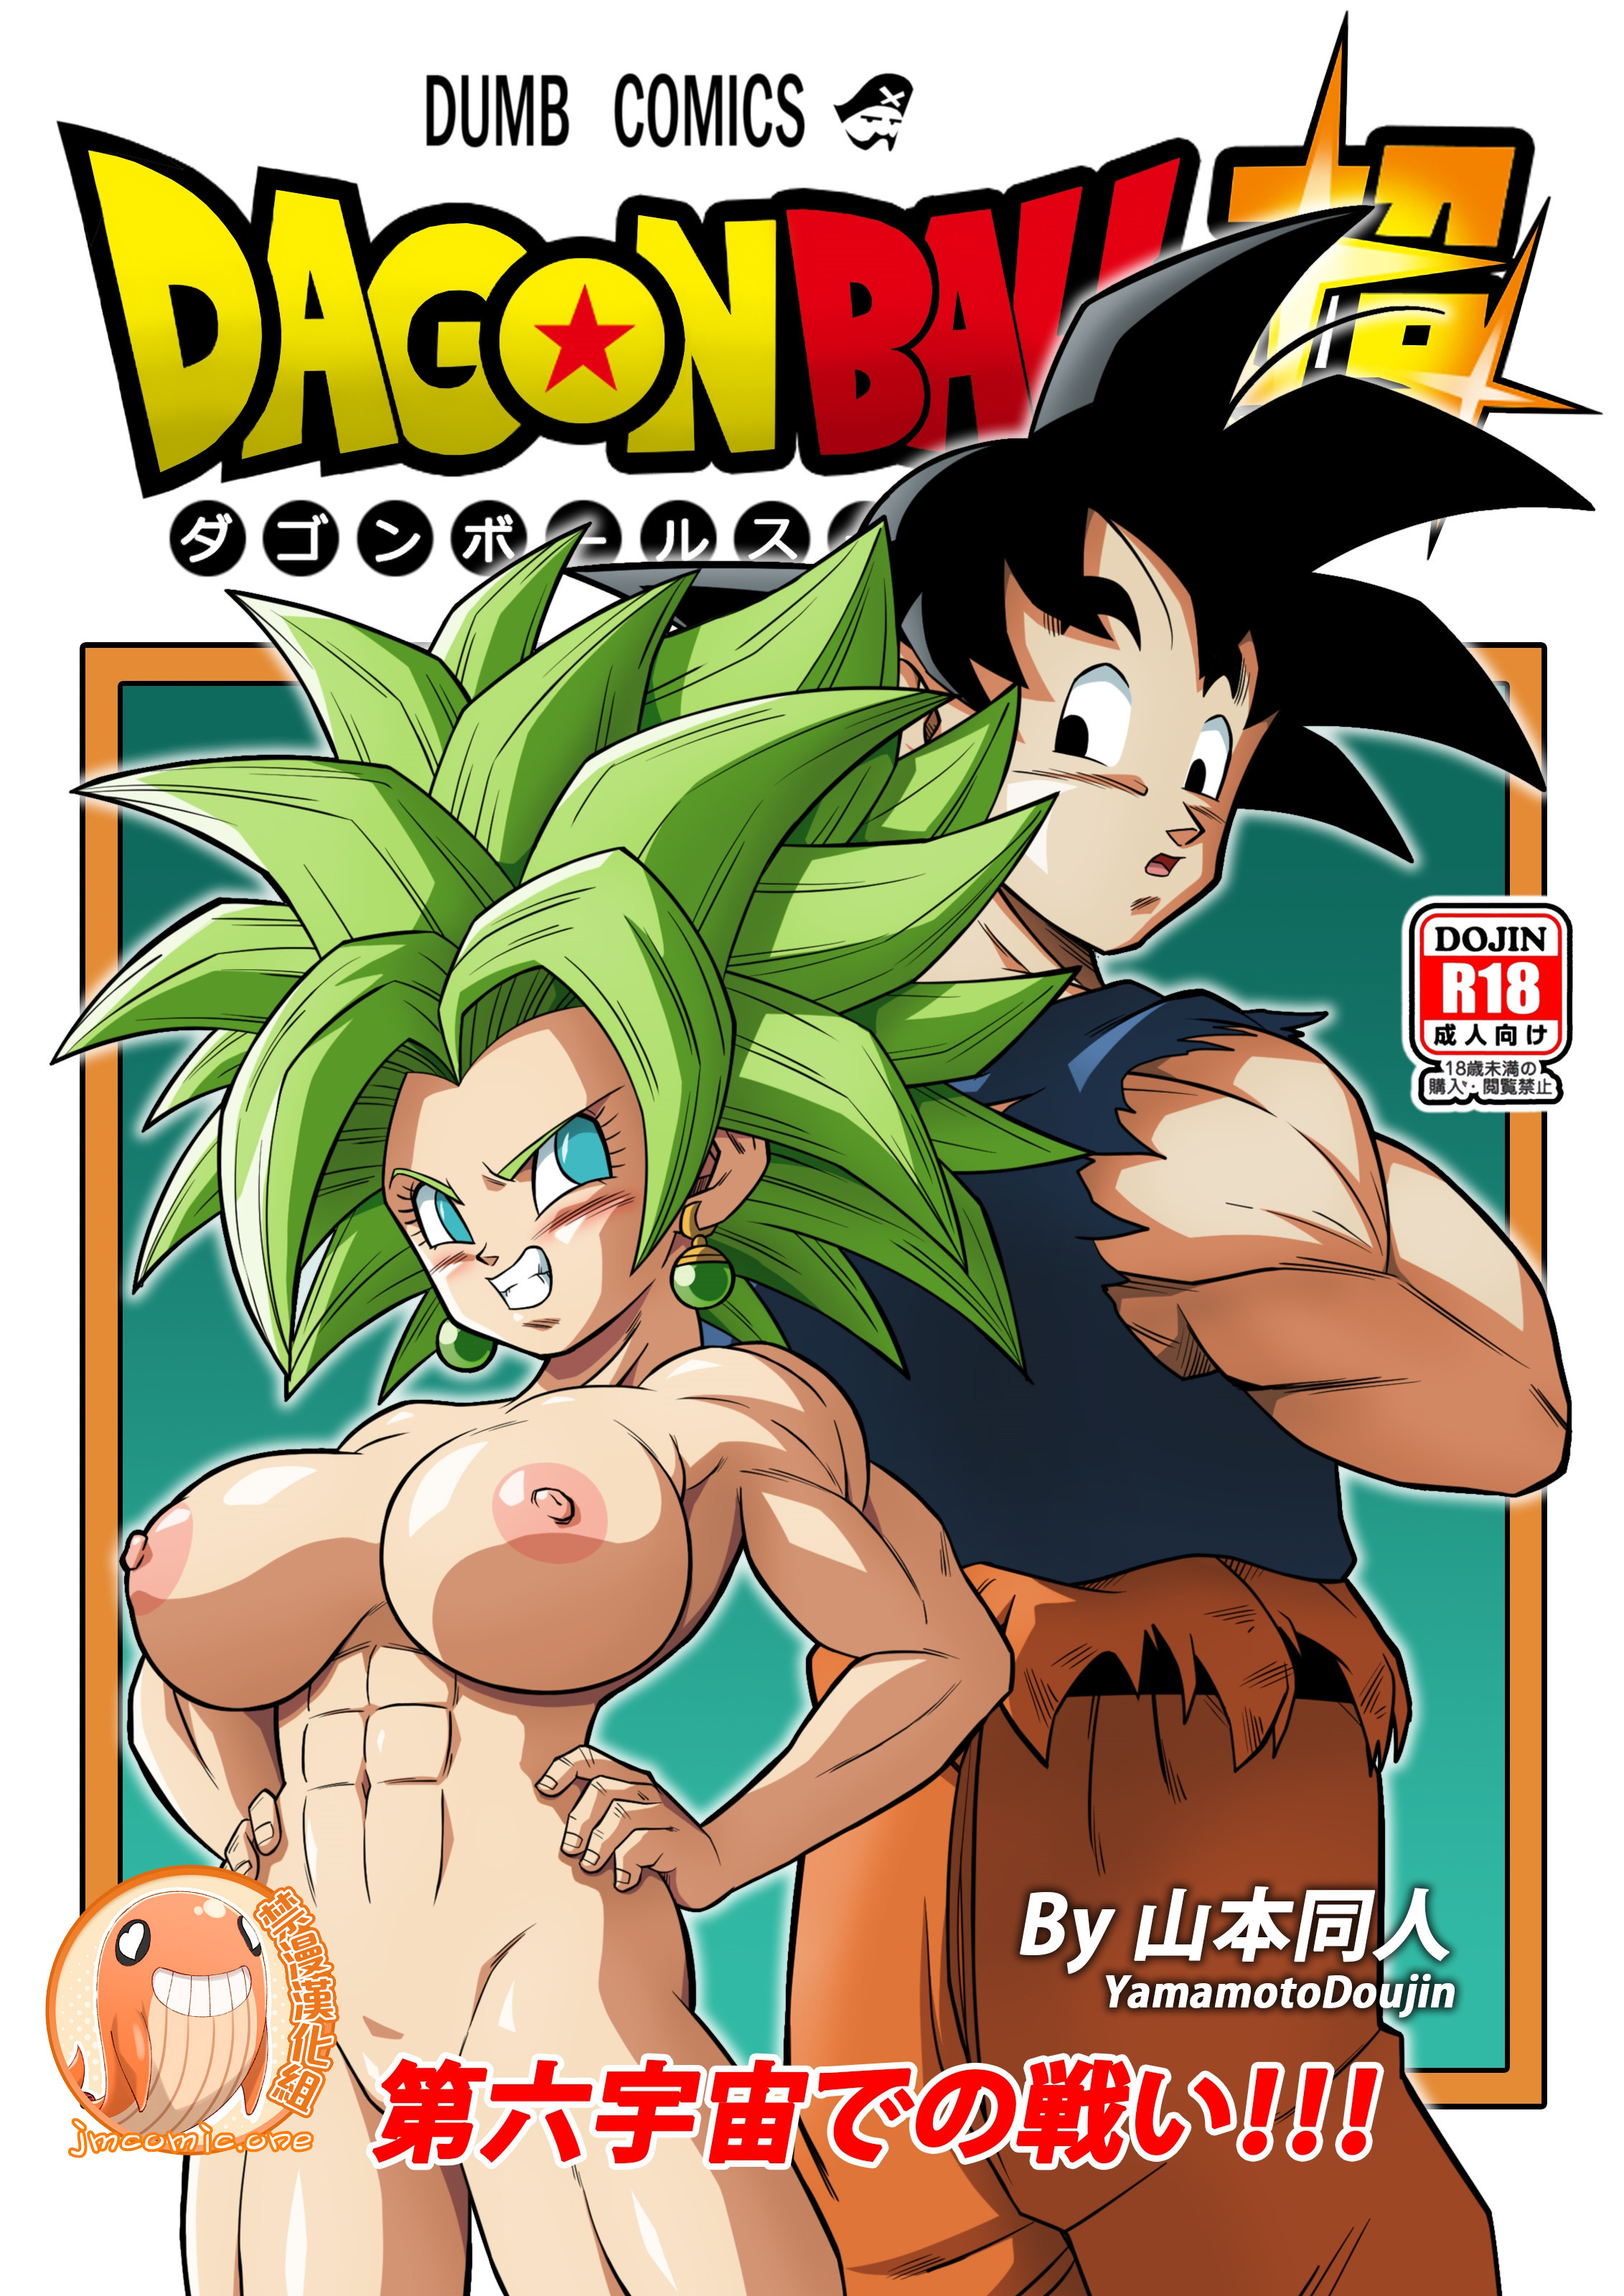 Full Dbz Xxx - Dragon Ball Super - Free Hentai Manga, Doujins & XXX